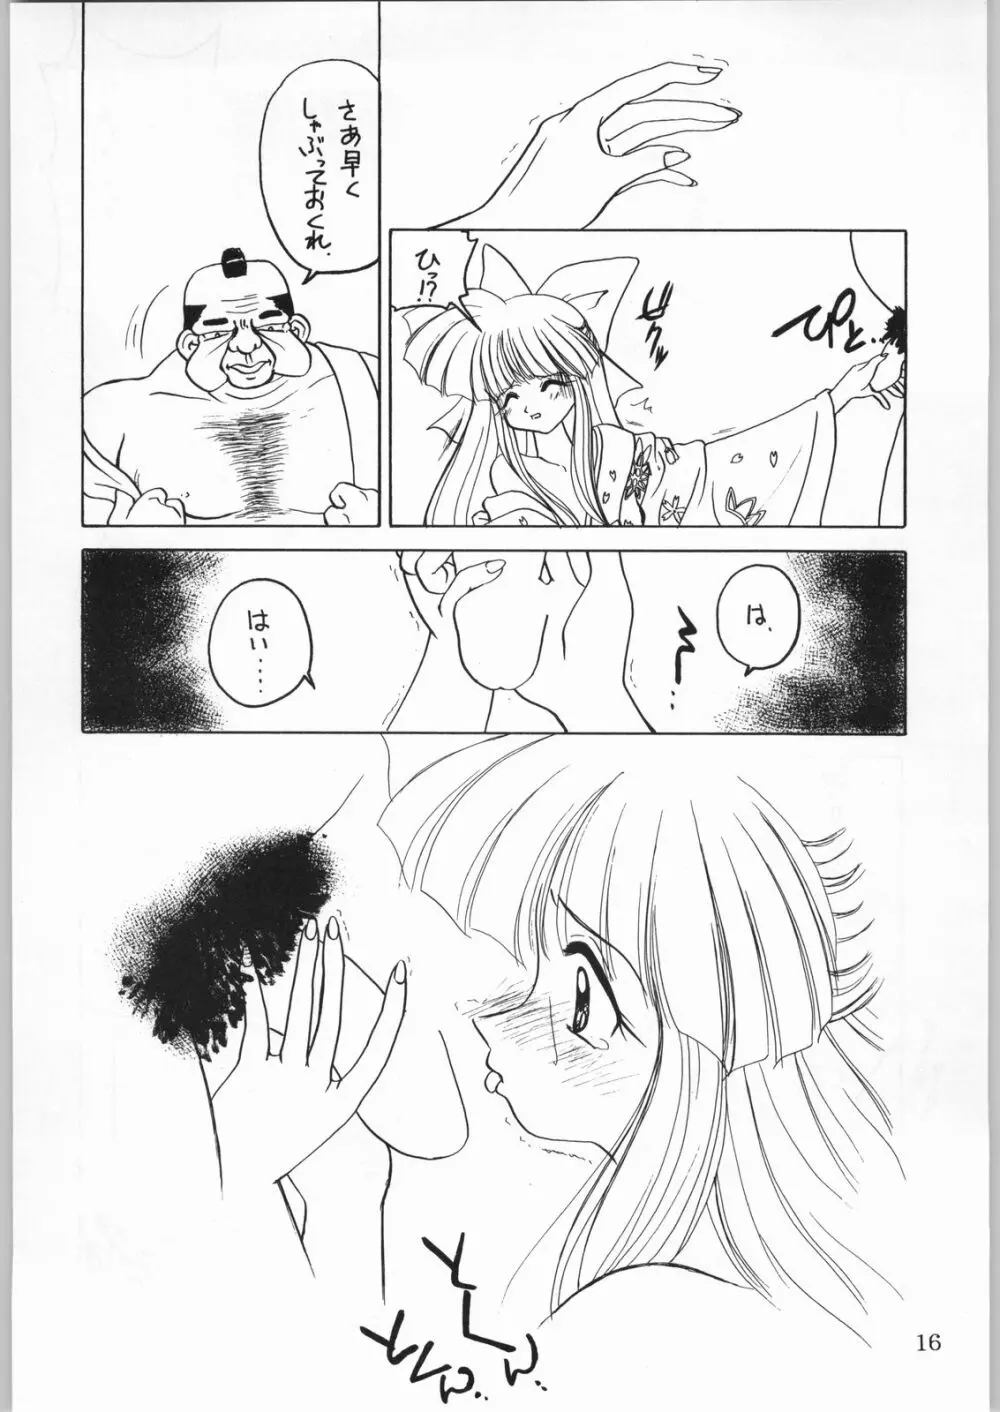 ALICEちゃんたち6 15ページ